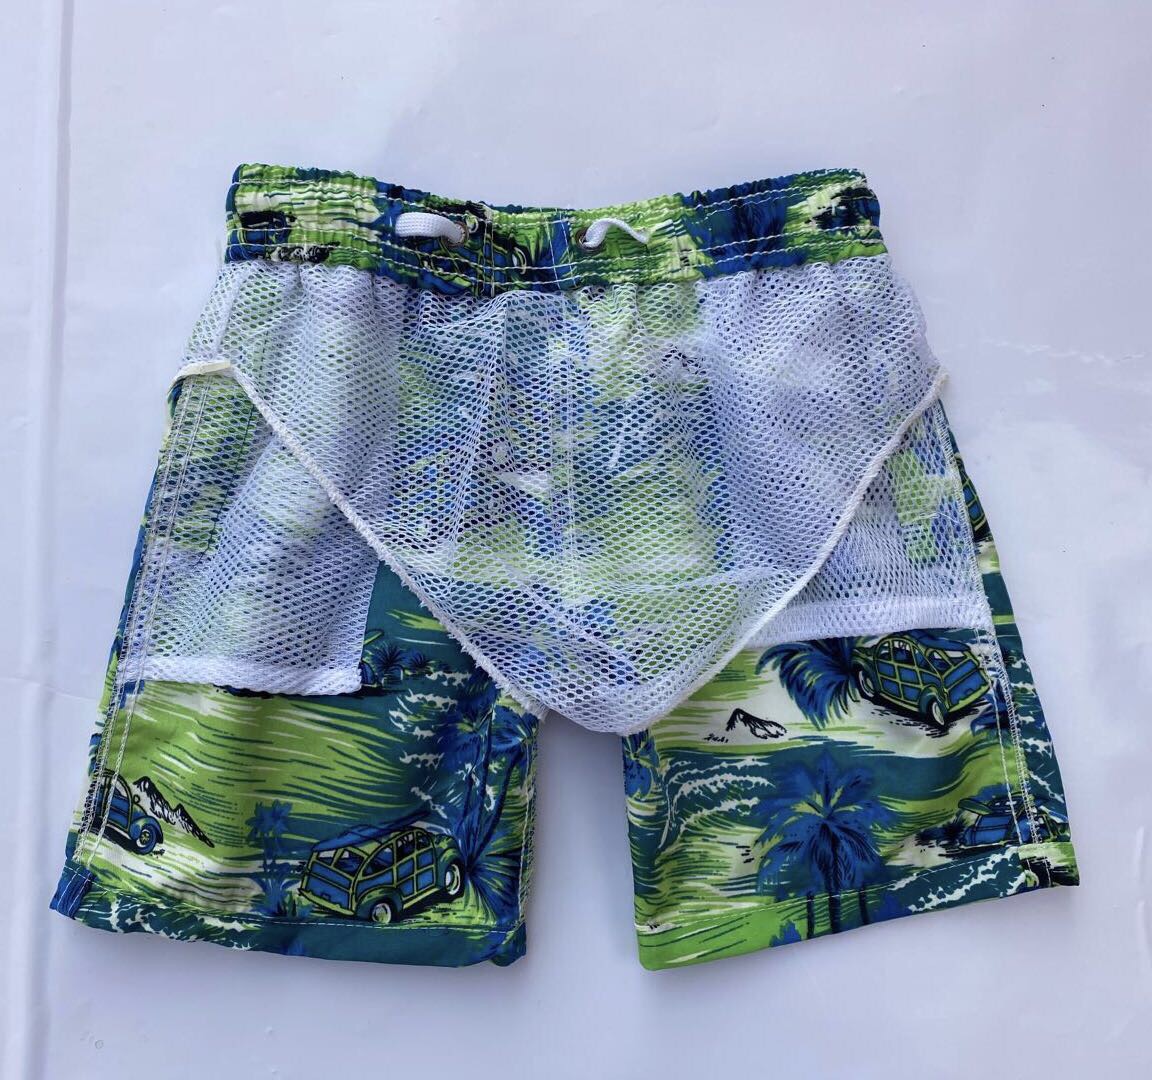 夏季潮流时尚沙滩裤男士ins休闲短裤流行青少年宽松五分裤产品图